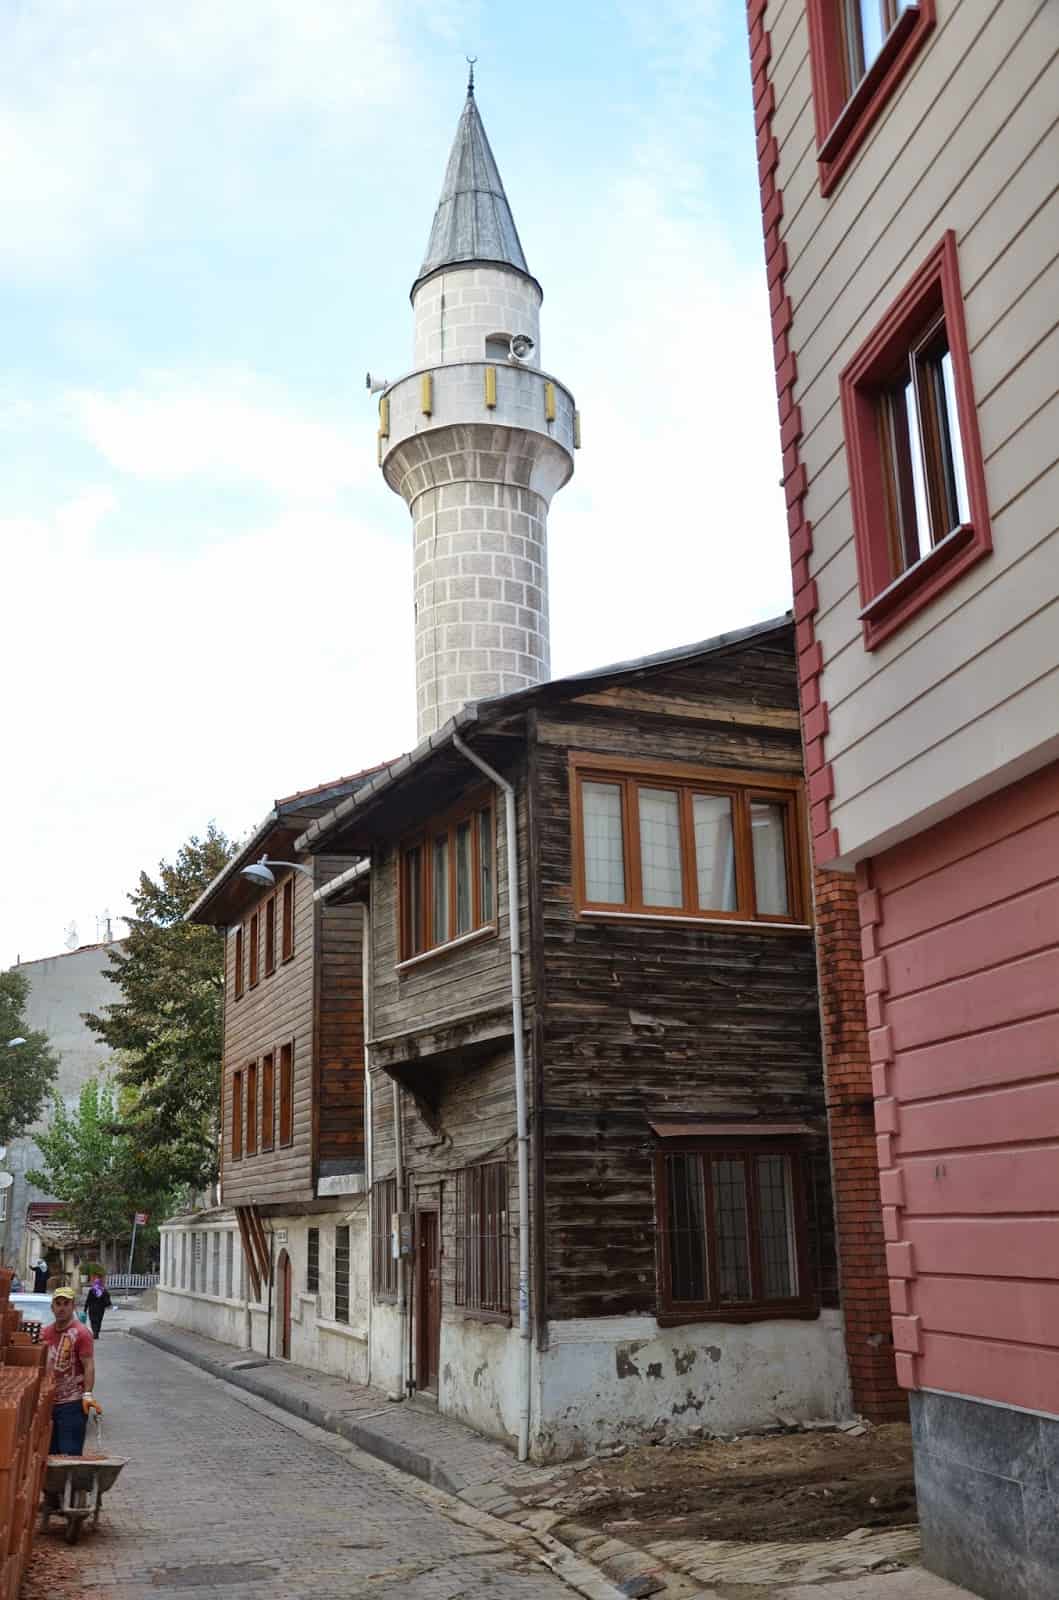 Ahcıbası Camii in Üsküdar, Istanbul, Turkey